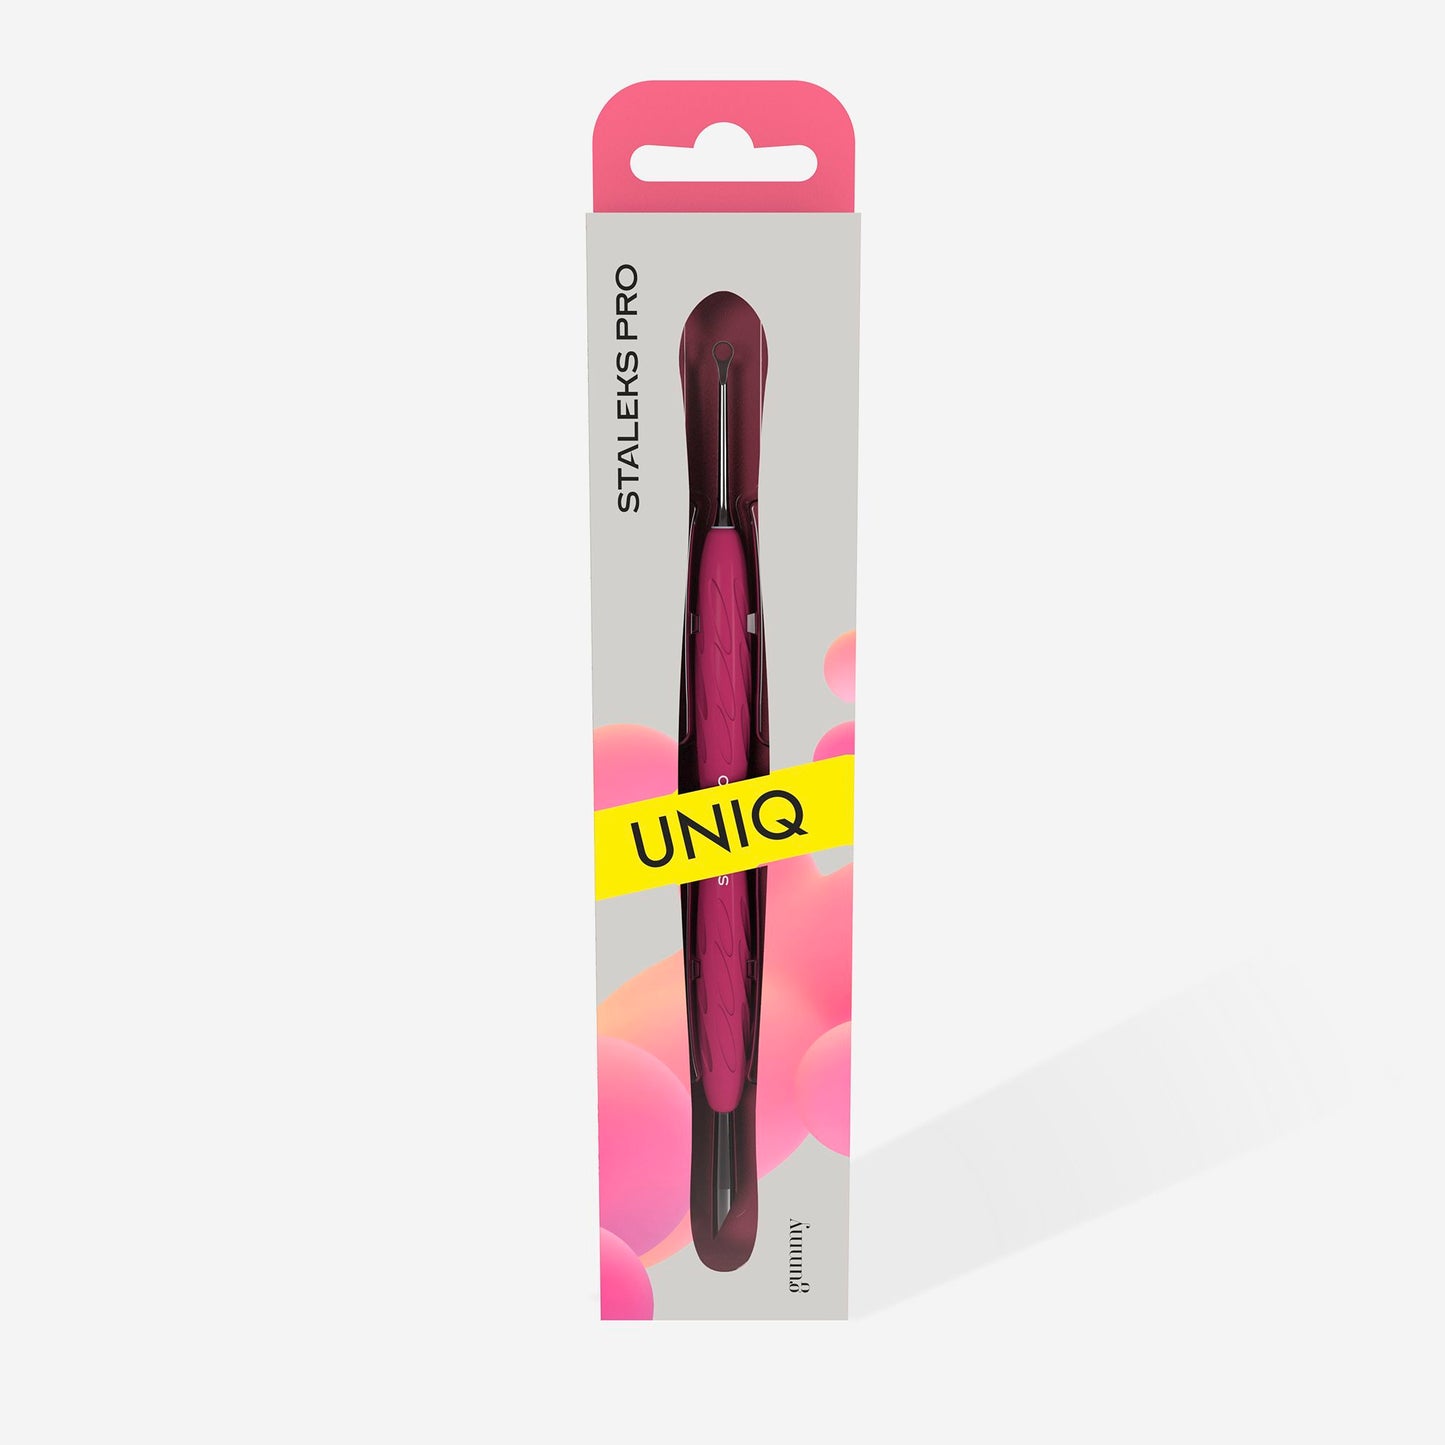 Staleks Manicure pusher with silicone handle “Gummy” UNIQ 11 TYPE 2 (slanted pusher + ring)